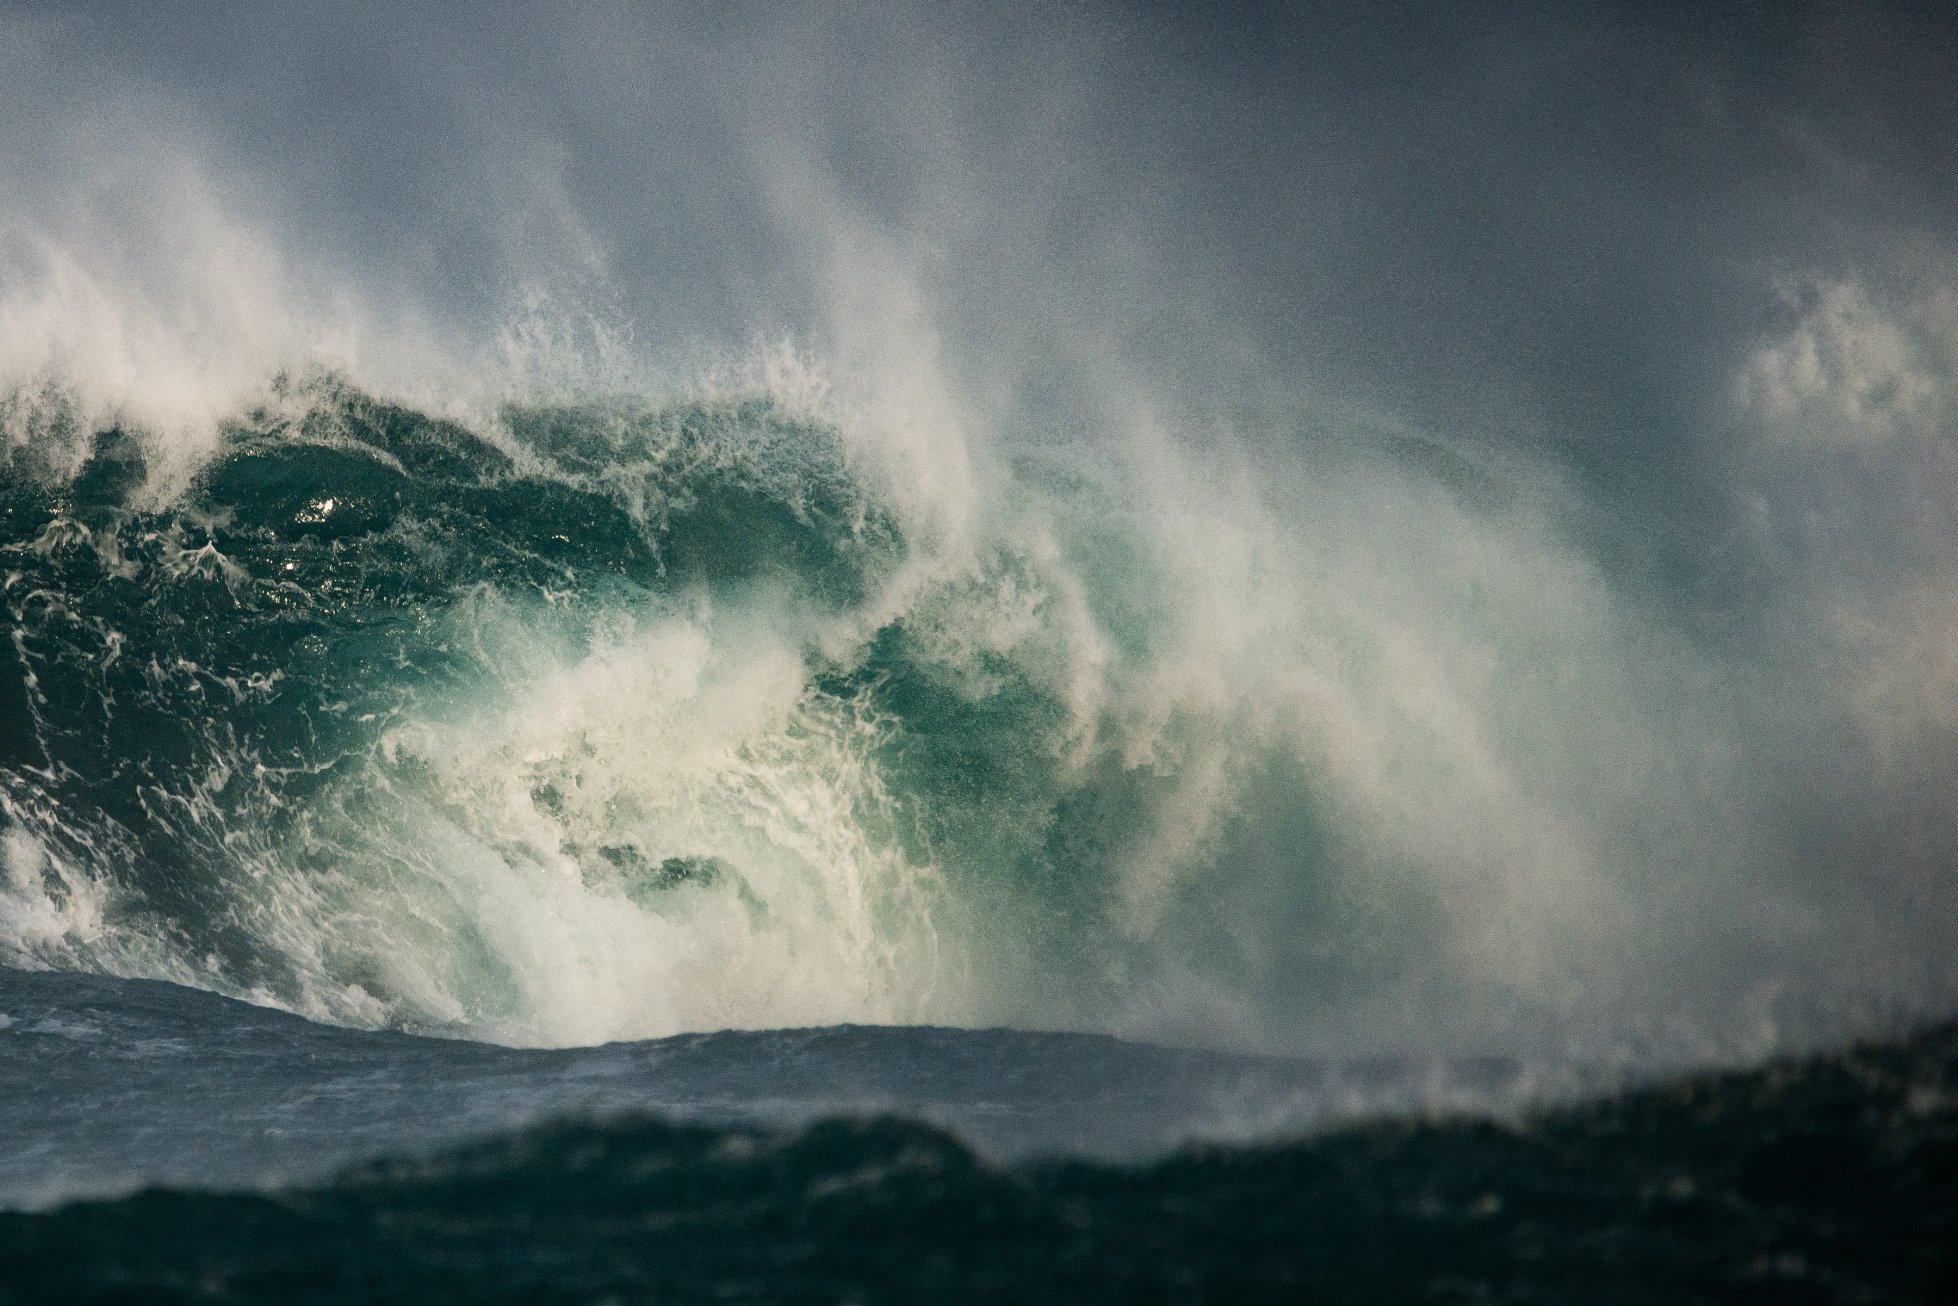 Wave crashing off Orkney - image by Margaret Soraya